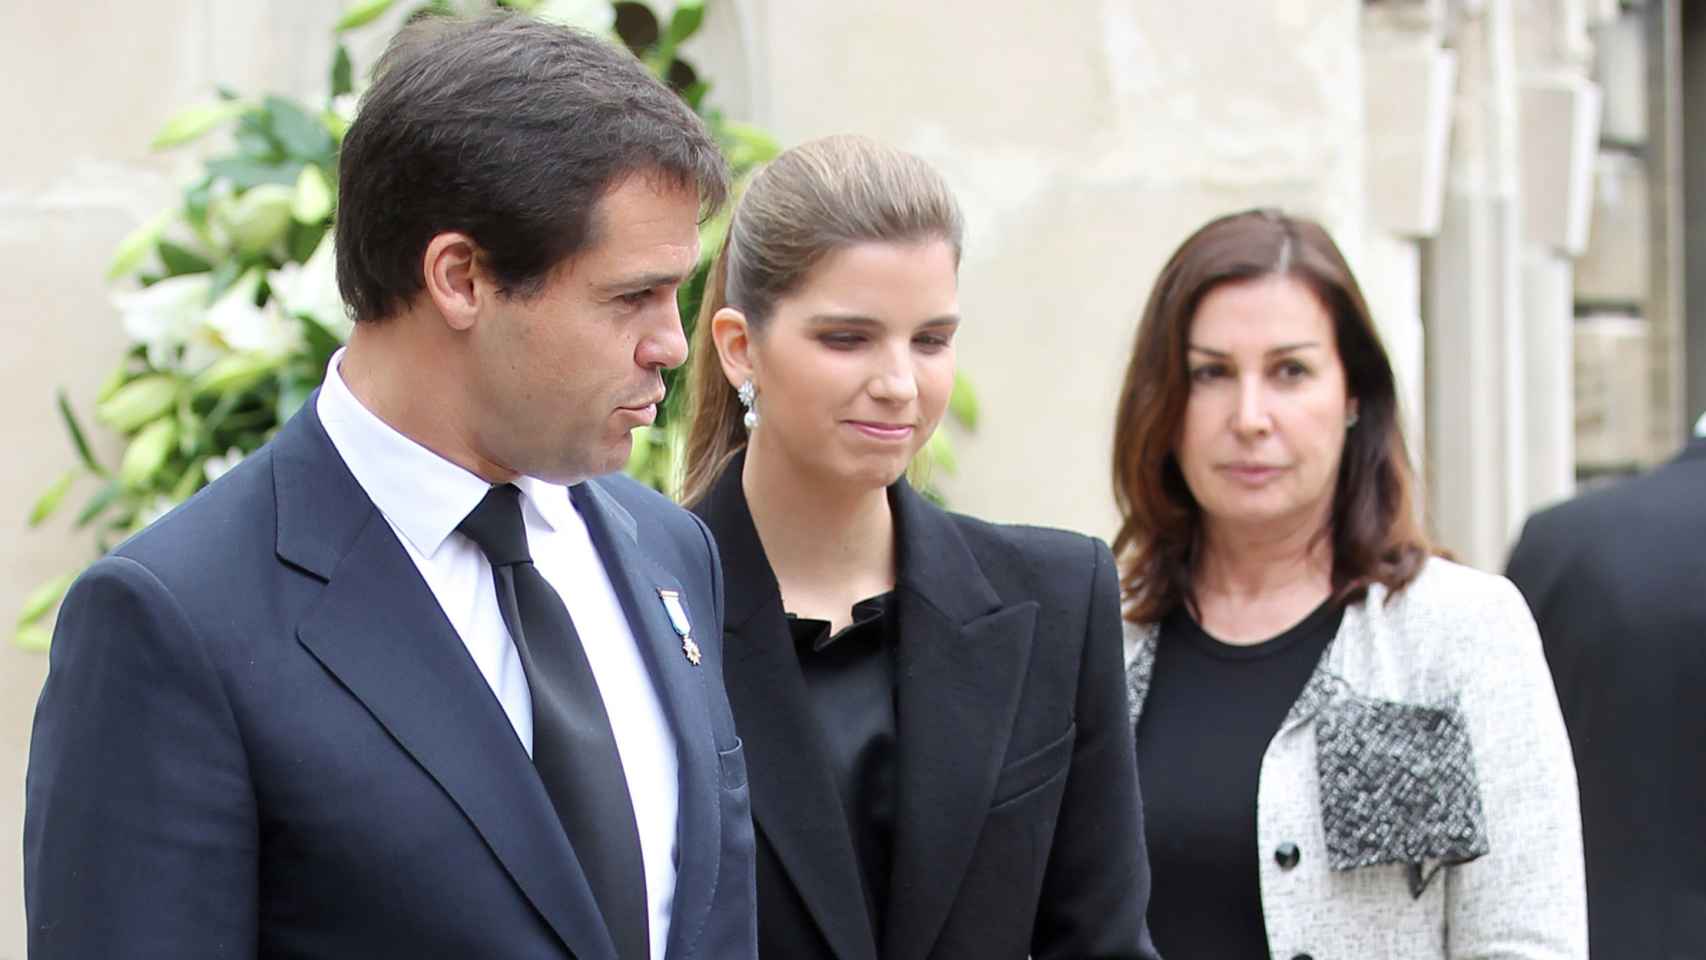 Luis Alfonso de Borbón con su esposa, Margarita Vargas, y su madre, Carmen Martínez Bordiú.